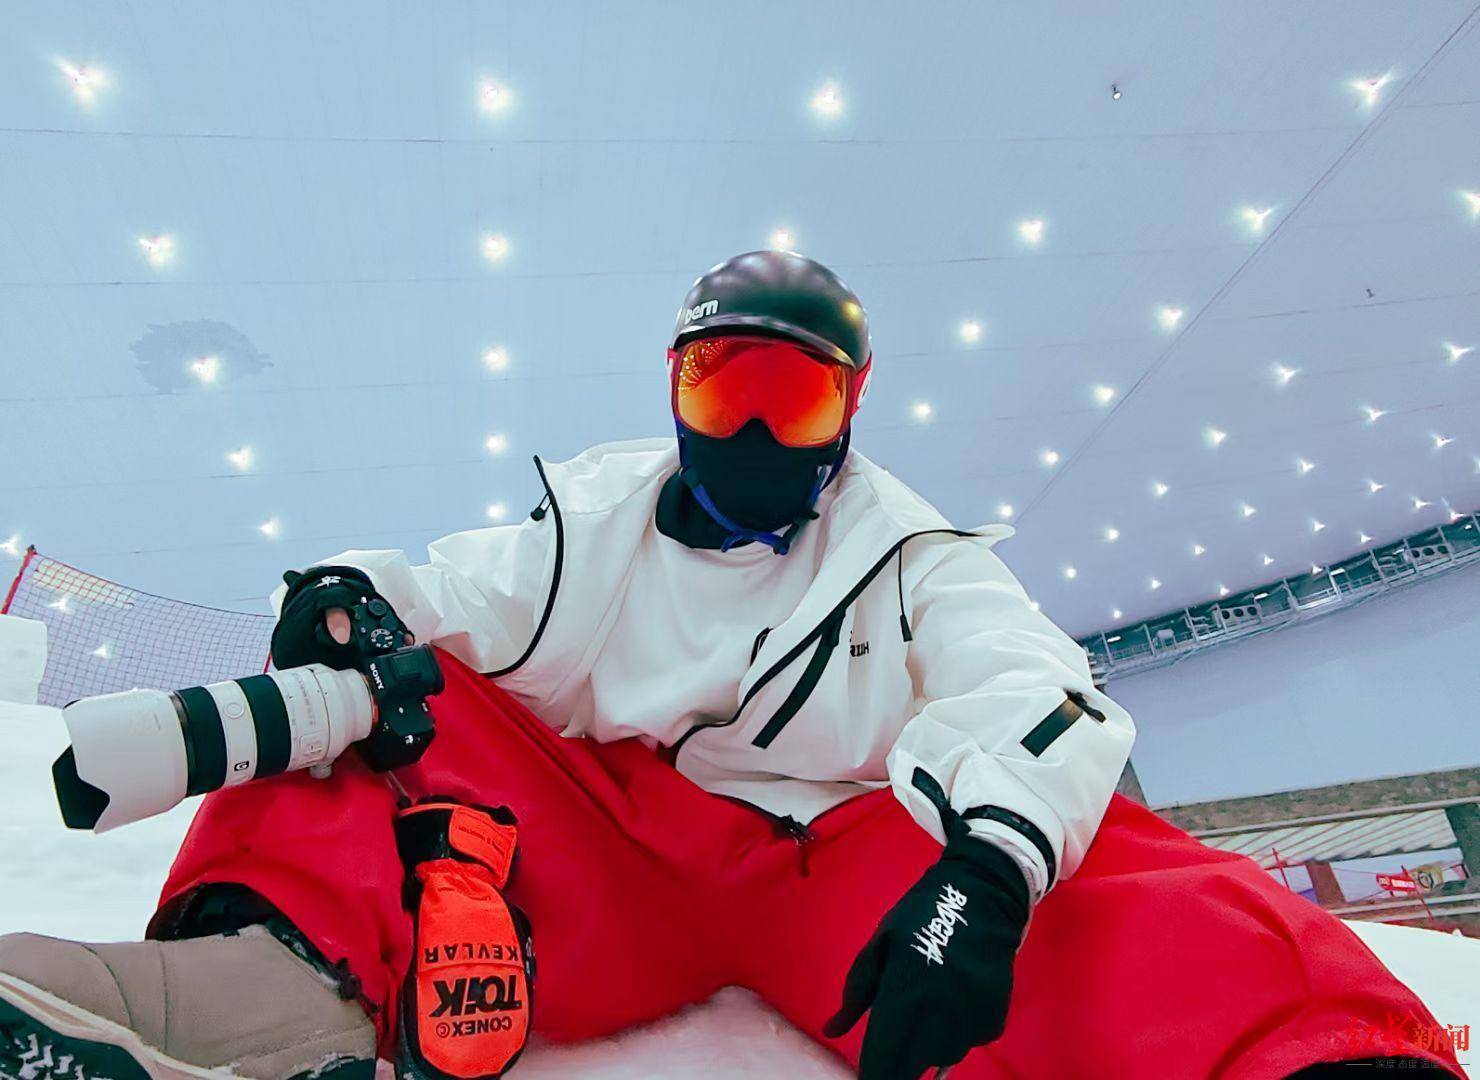 顶级滑雪教练因滑雪跟拍意外身亡， 滑雪摄影师讲解跟拍时如何保证自身安全,滑雪